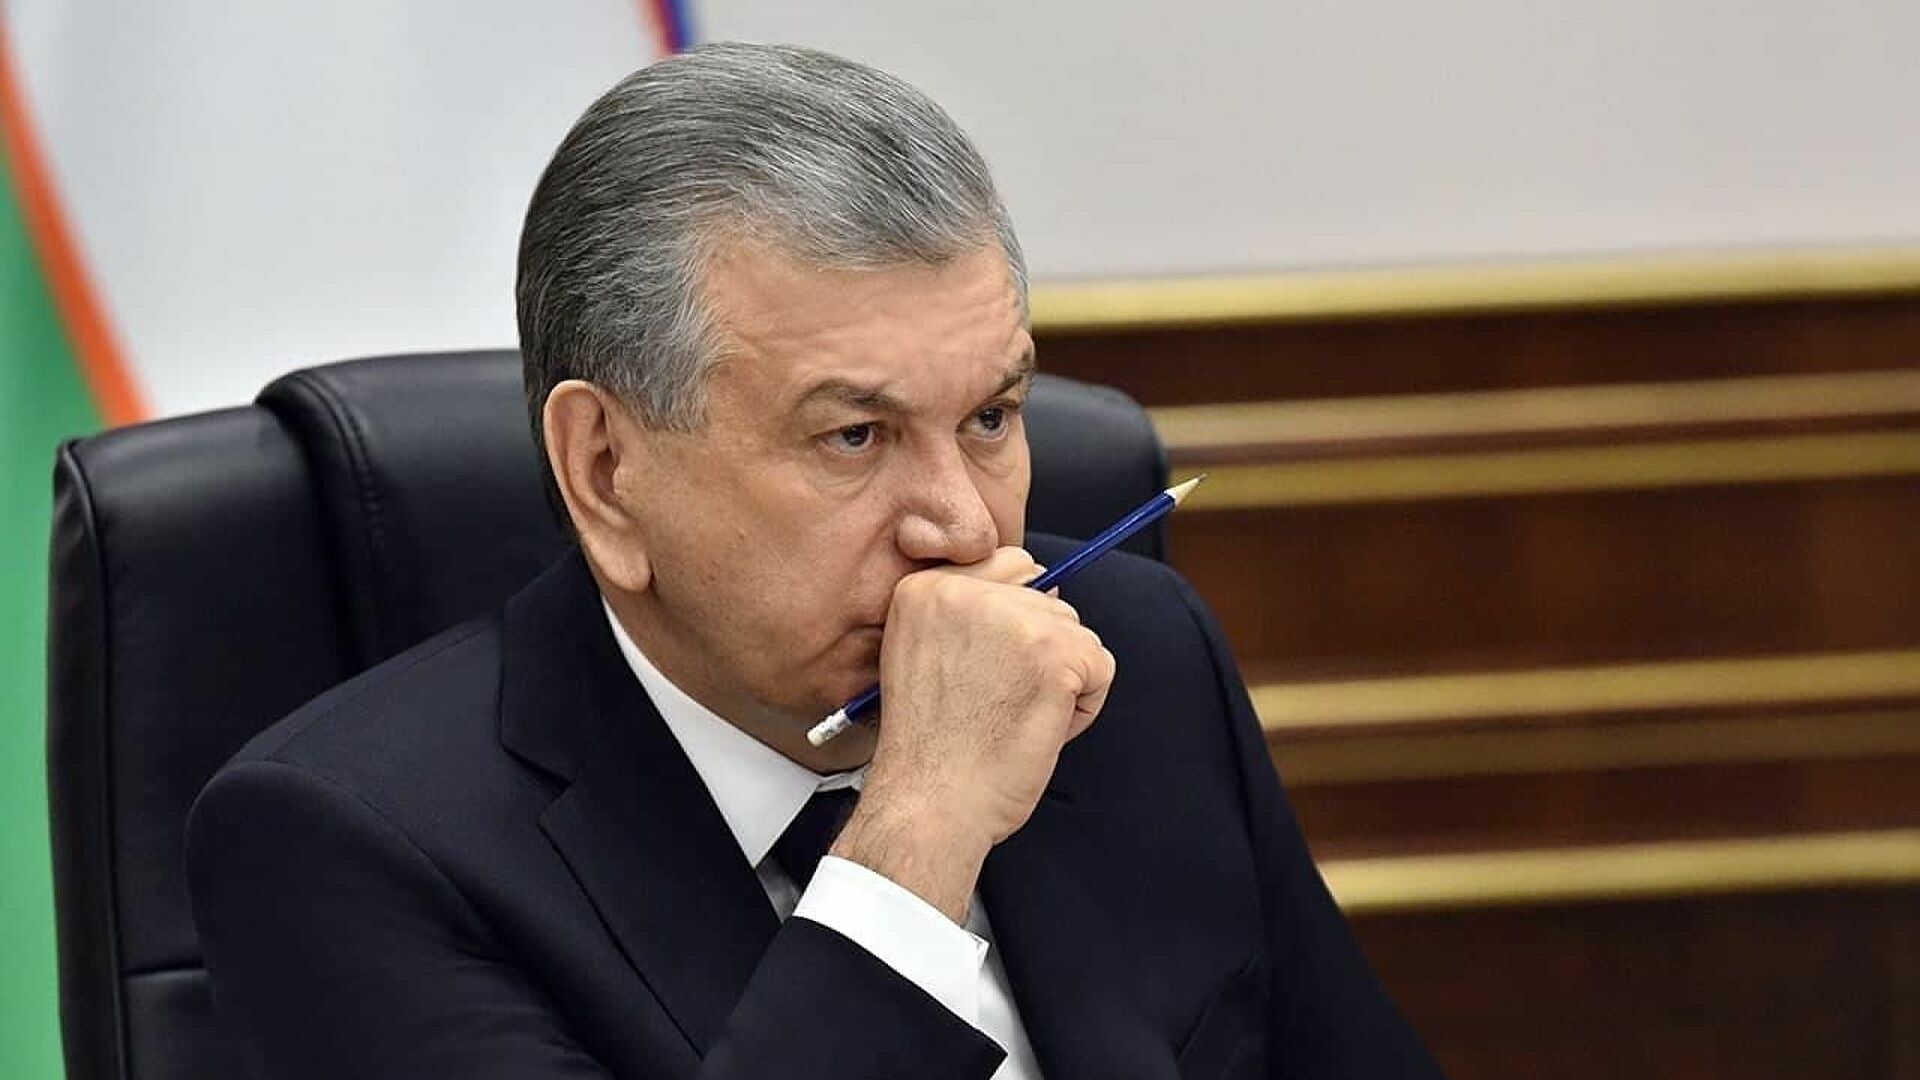 Шавкат Мирзиёев выразил соболезнования в связи с кончиной президента ОАЭ